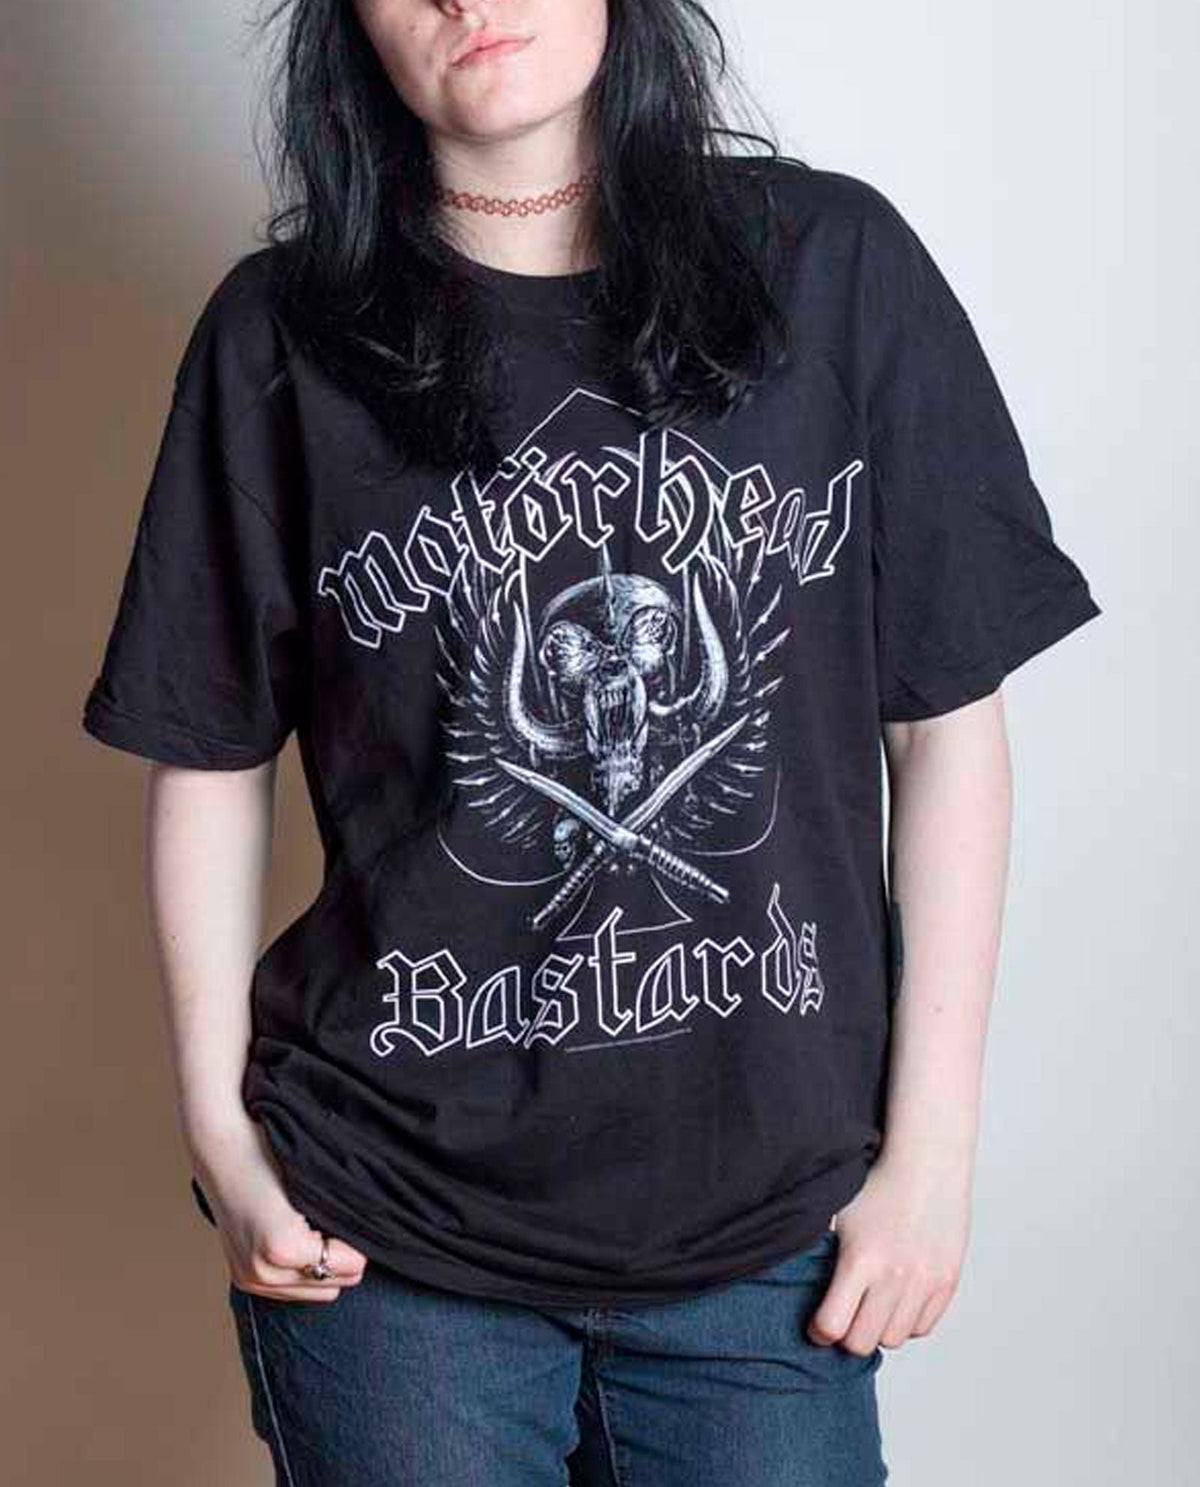 Mötorhead - Camiseta "Bastards" Unisex - D2fy · Rocktud - Rocktud